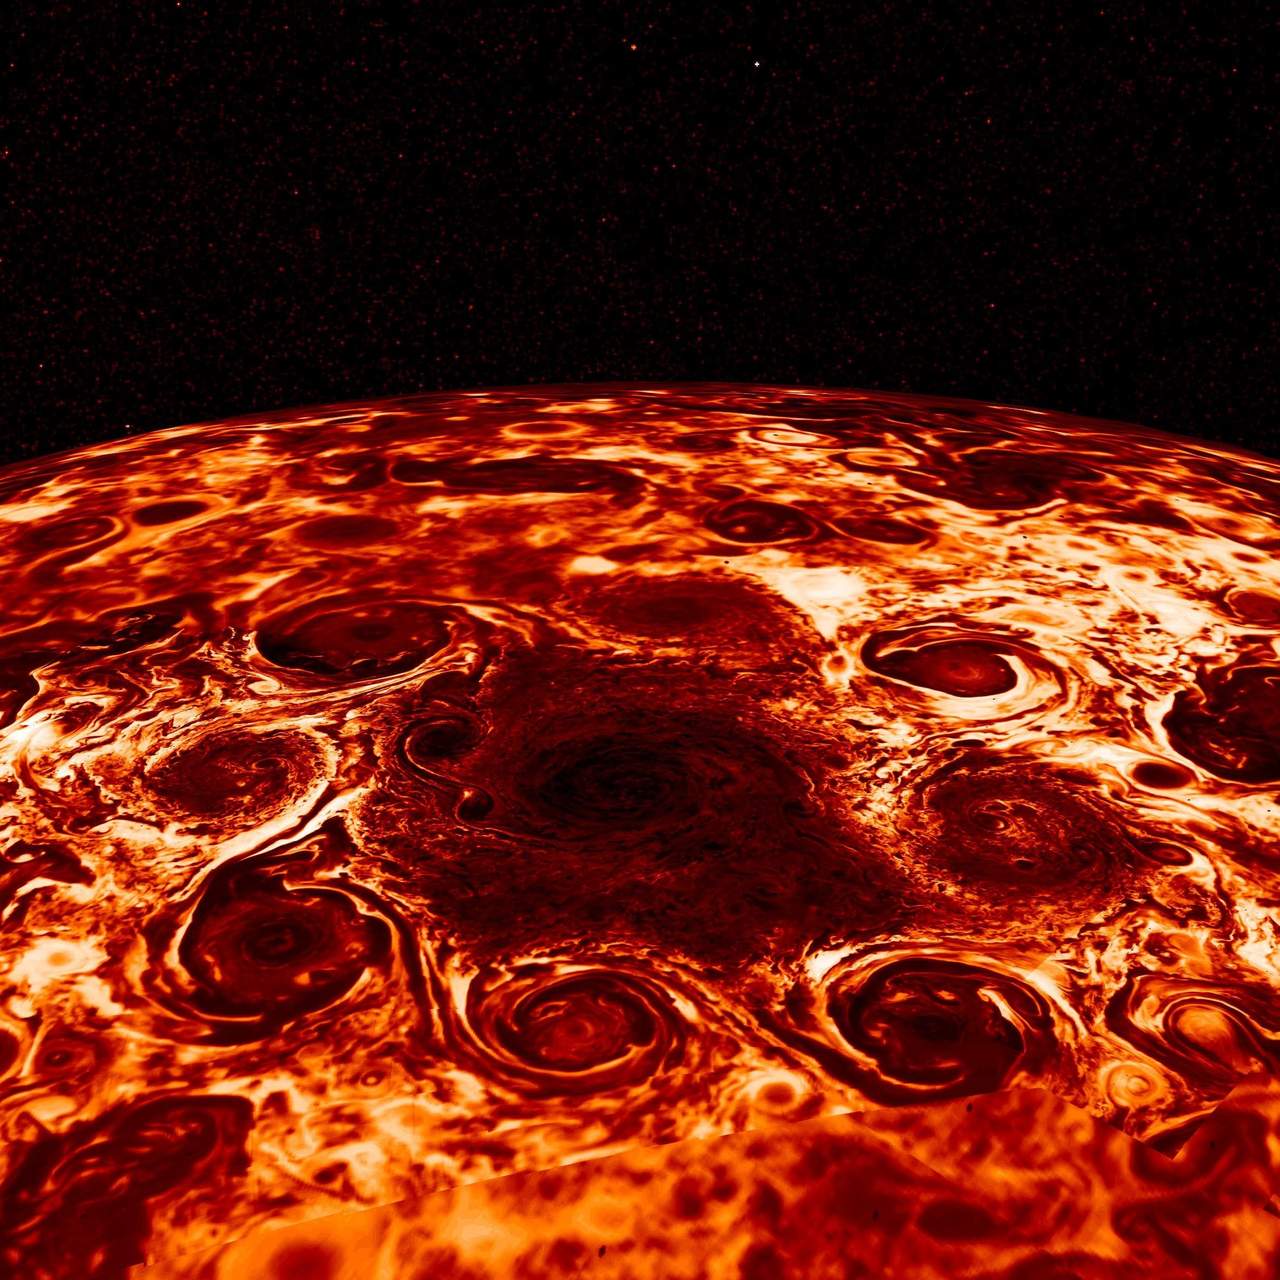 Los científicos han generado imágenes tridimensionales con los datos recopilados por uno de los instrumentos de la nave, que permitió mapear en tres dimensiones el polo norte de Júpiter. (EFE)